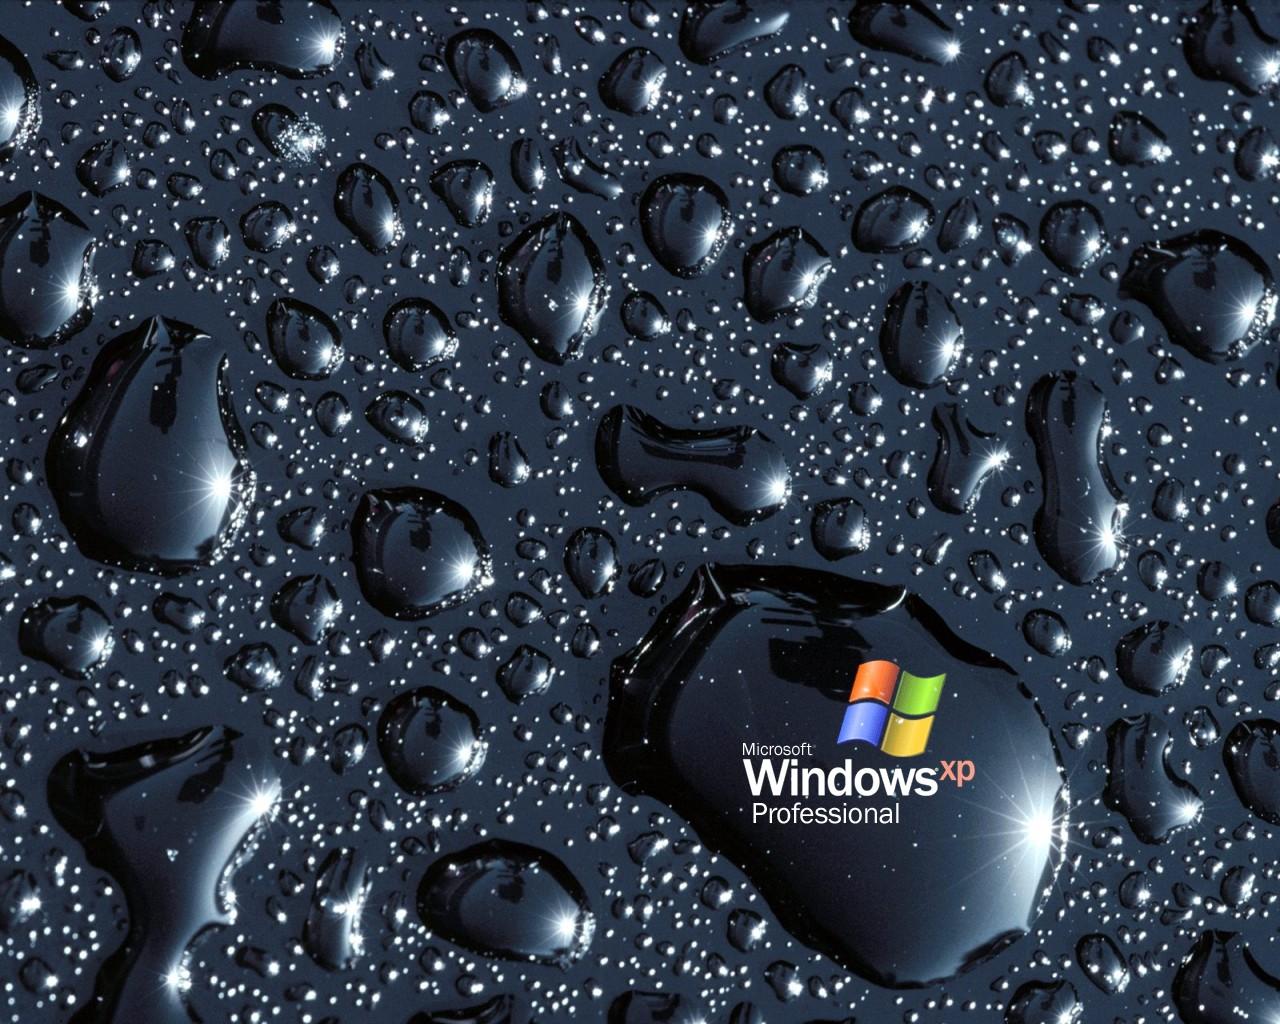 Hình nền Microsoft cập nhật thường xuyên để mang đến những trải nghiệm độc đáo cho người dùng. Với thế giới sống đang thay đổi nhanh chóng, hãy để mình được đổi mới, thư giãn và tận hưởng những hình ảnh độc đáo từ Microsoft.